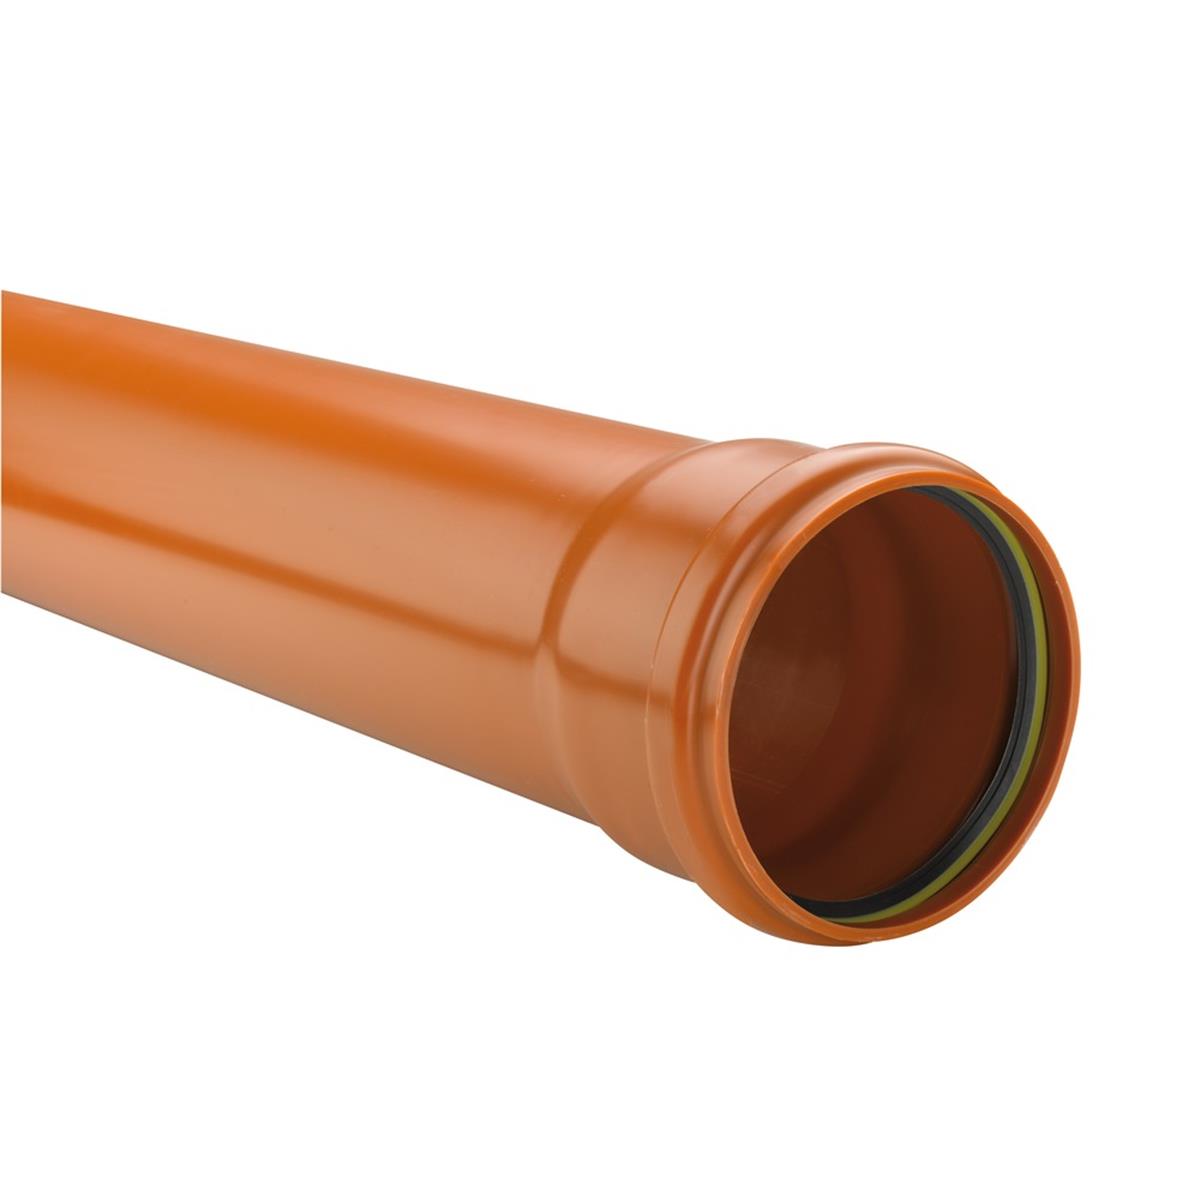 Eupen Oranje PVC buis 110X3.2 (11/22) Lengte 3m Volgens de norm NBN EN 1401. Gemoft met vaste dichting. Kleur REB:  RAL 8023. Benor.